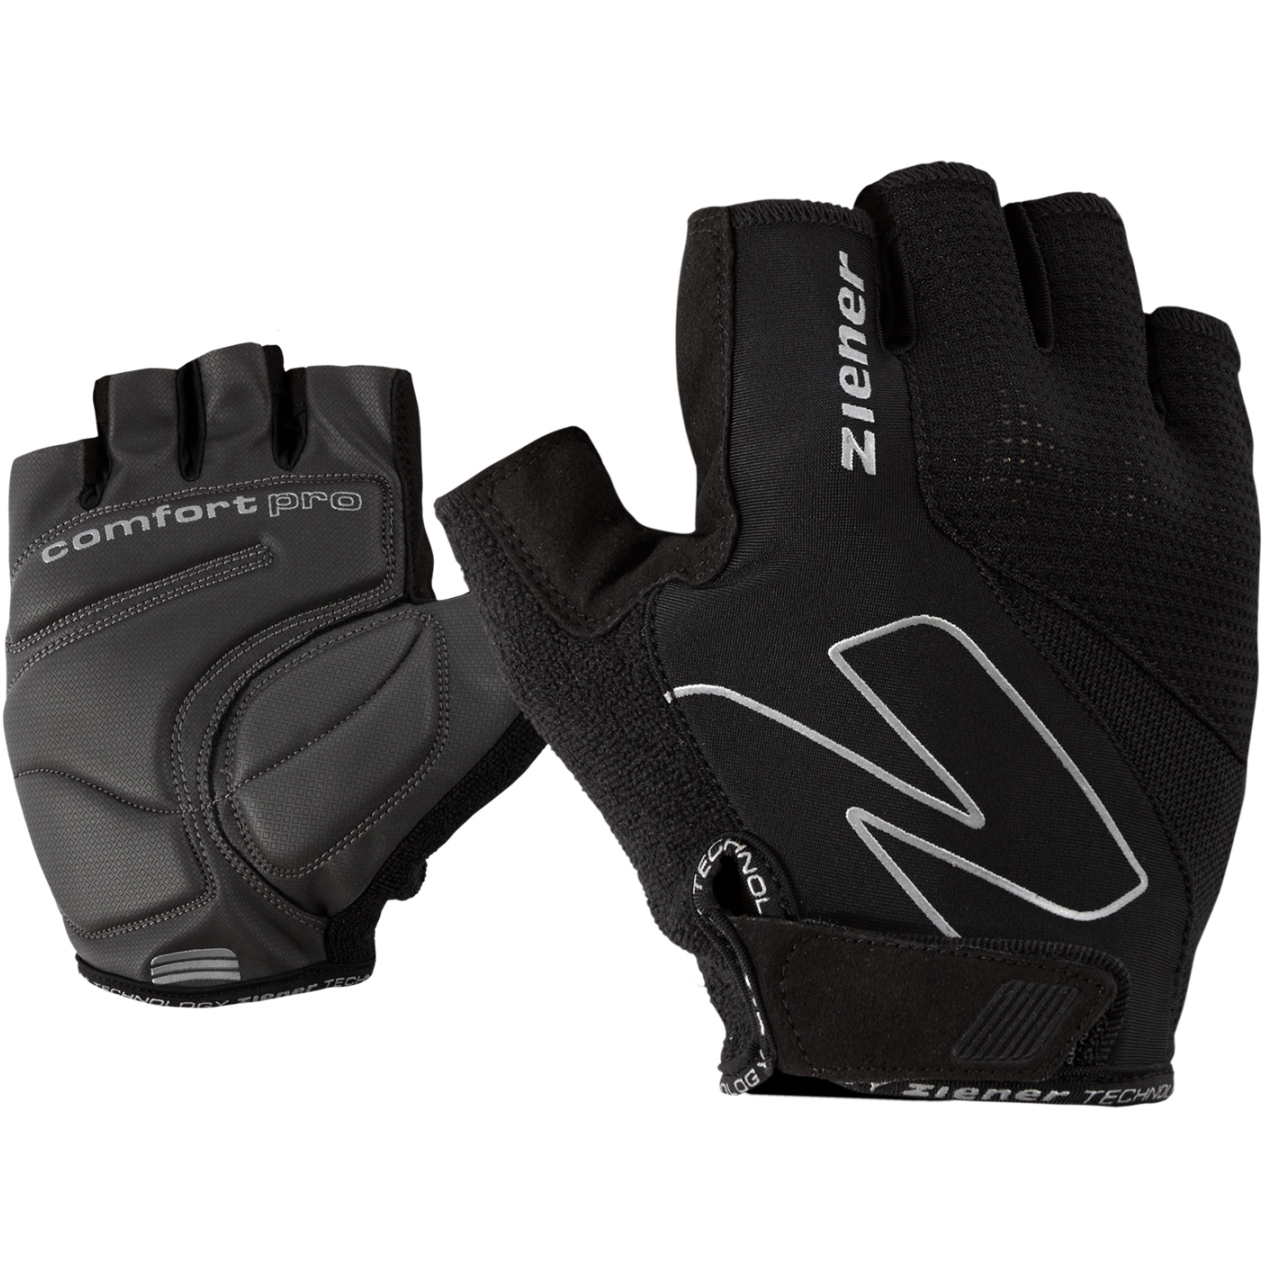 Productfoto van Ziener Crave Bike Gloves - black